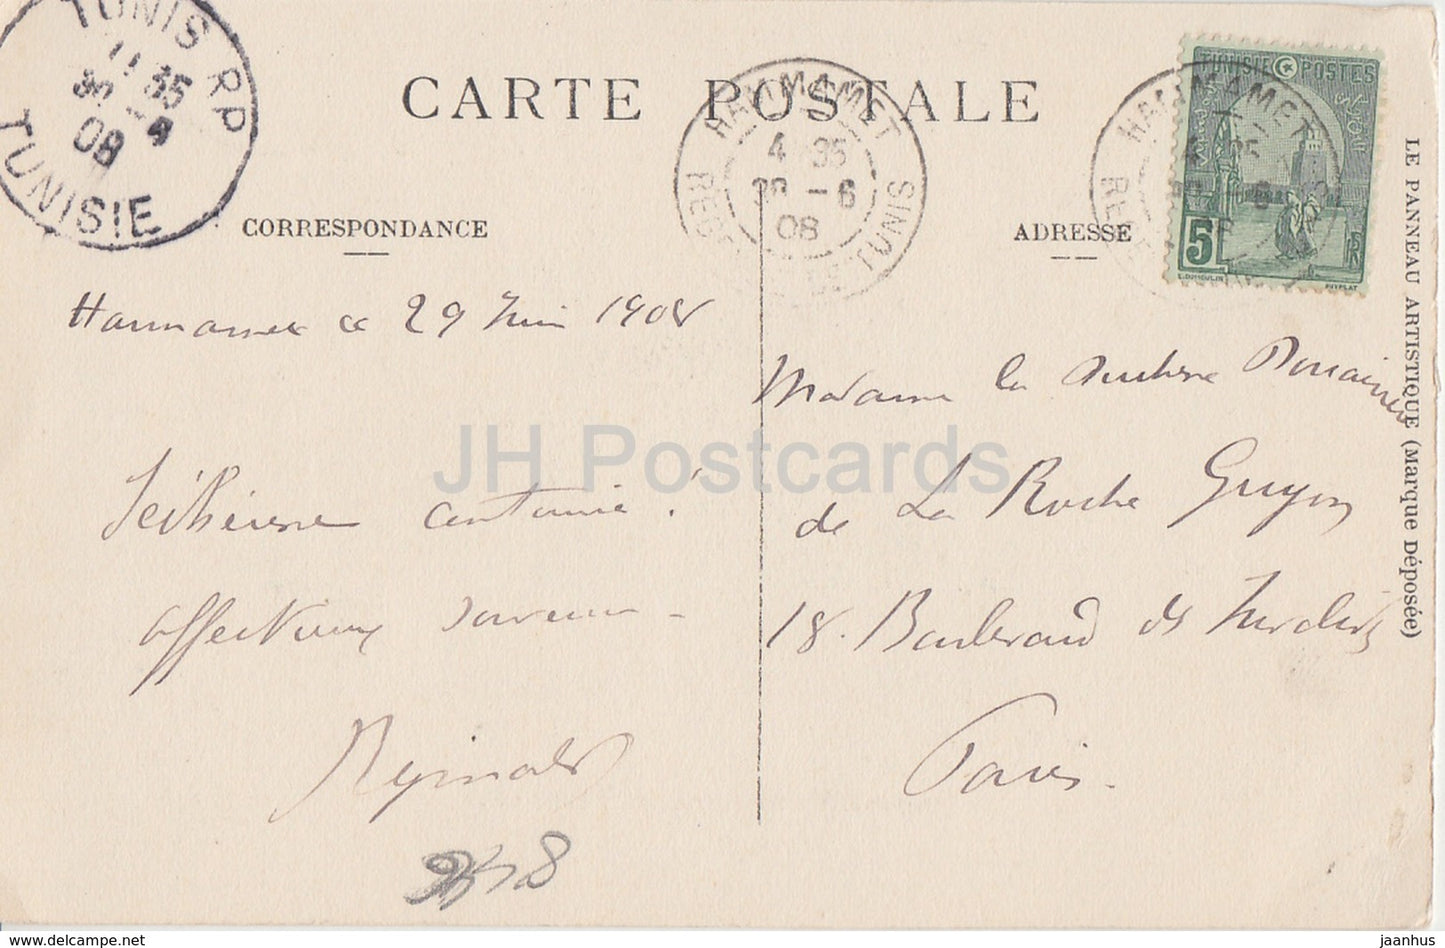 Tunisie - Notables se rendant à la campagne - 249 - carte postale ancienne - 1908 - Tunisie - oblitéré